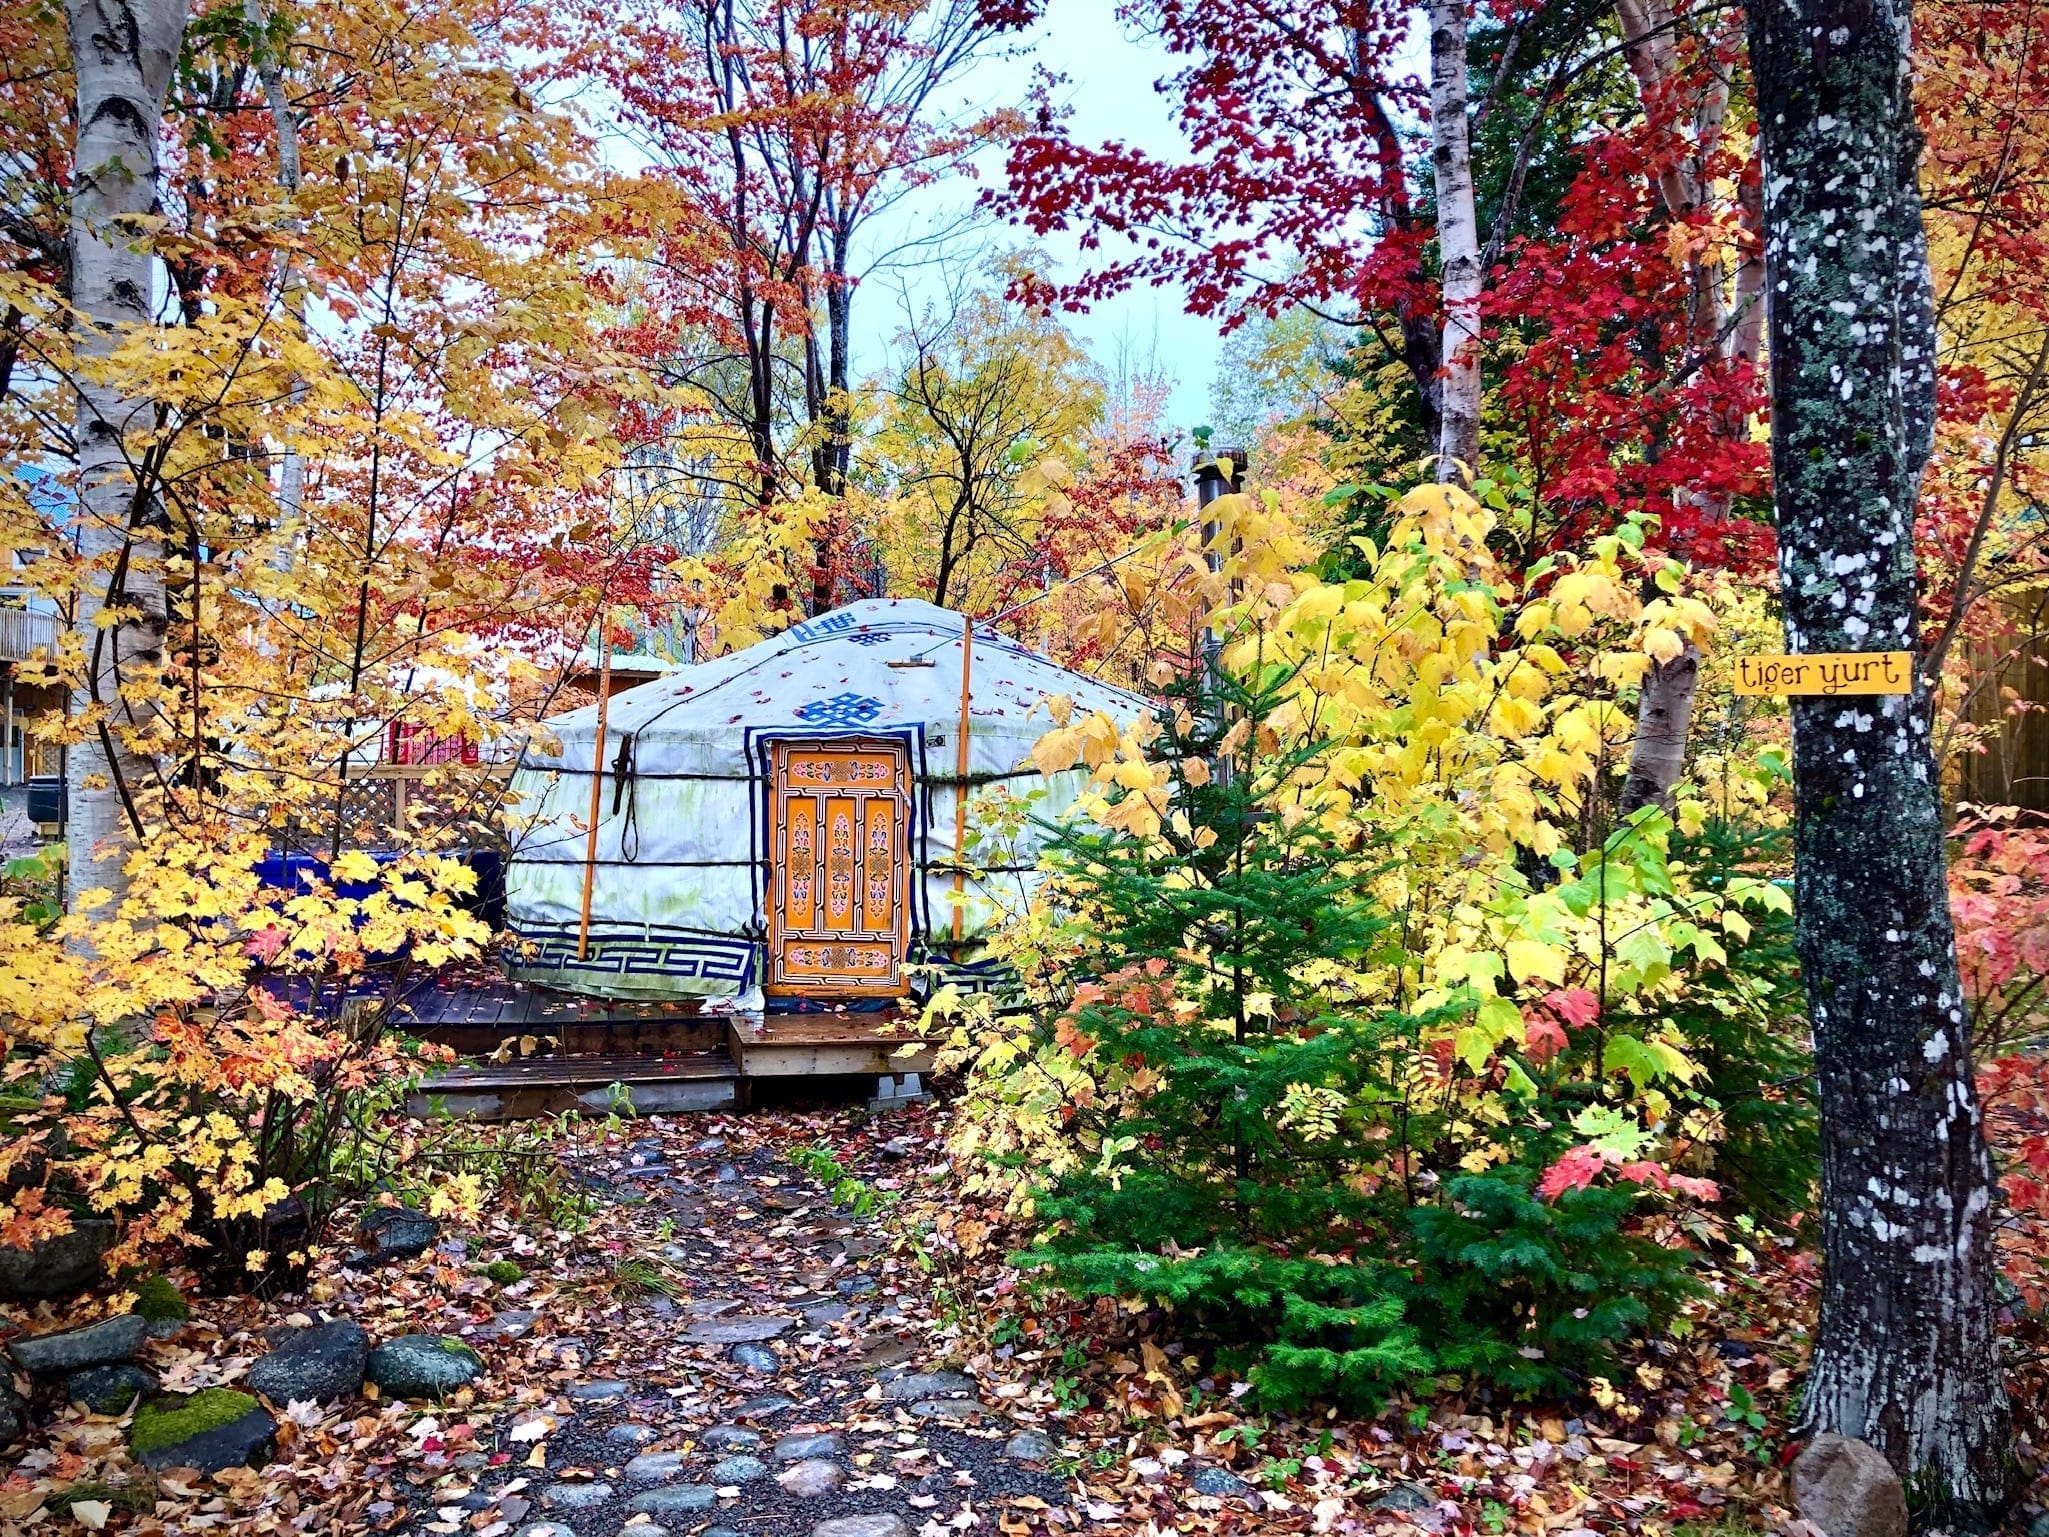 Tiger Yurt in fall